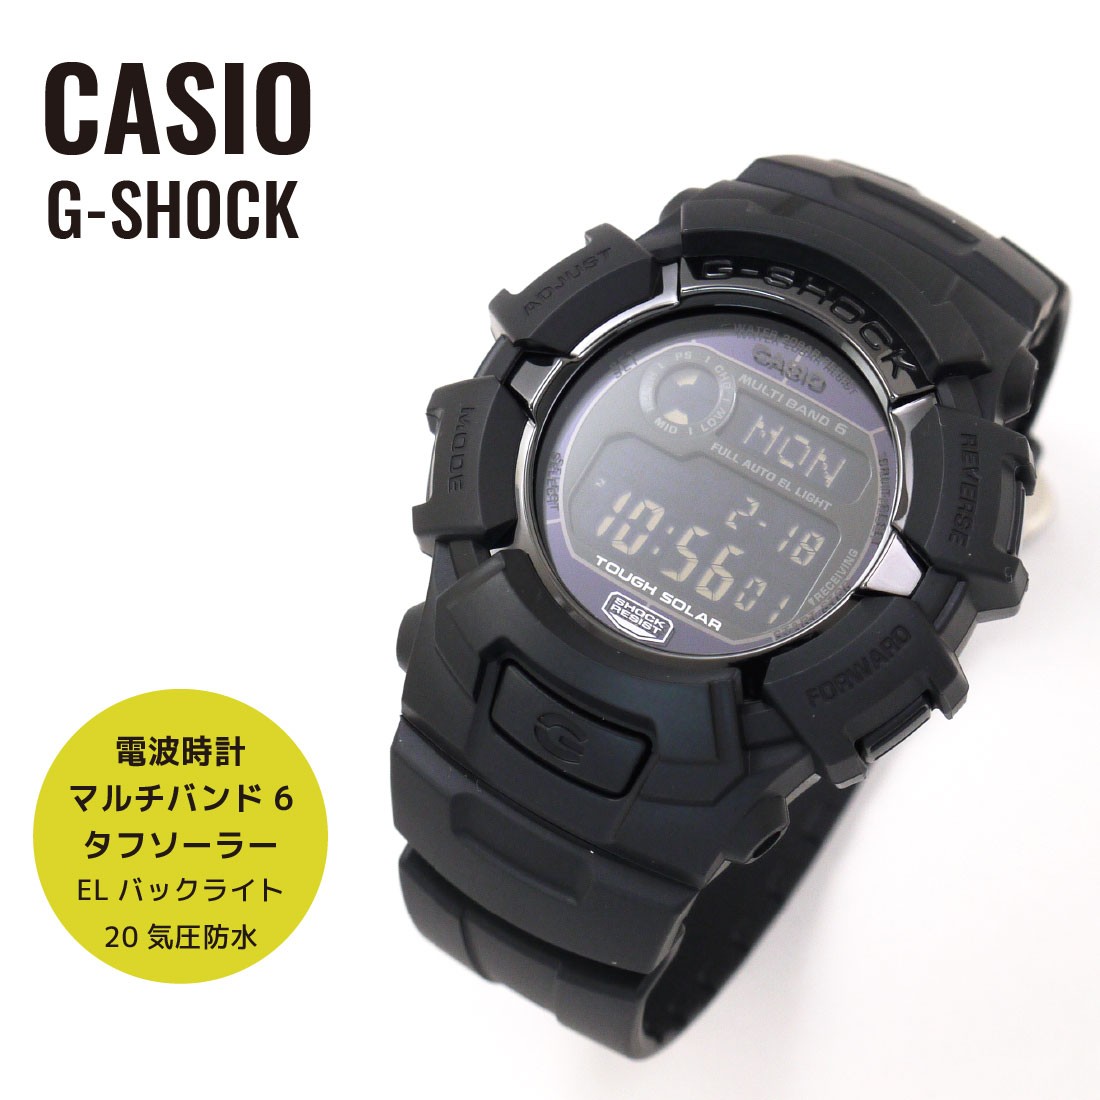 CASIO カシオ 腕時計 G-SHOCK G-ショック FIRE PACKAGE ファイアー